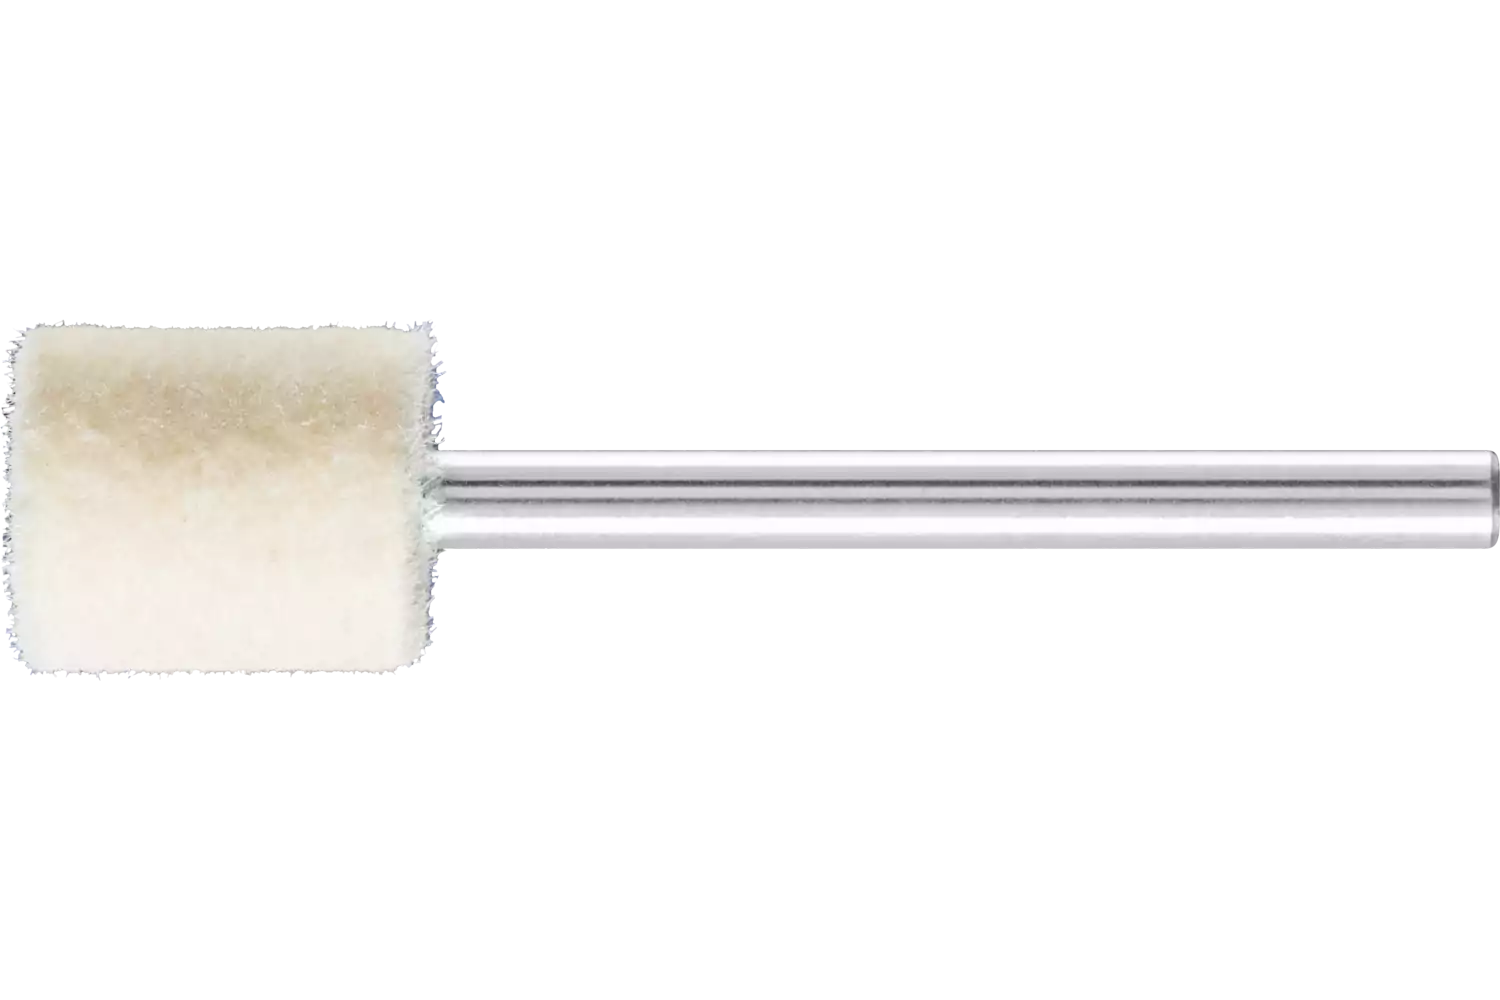 Feltri con gambo per lucidare duri forma cilindrica Ø 10x12 mm, gambo Ø 3 mm 1